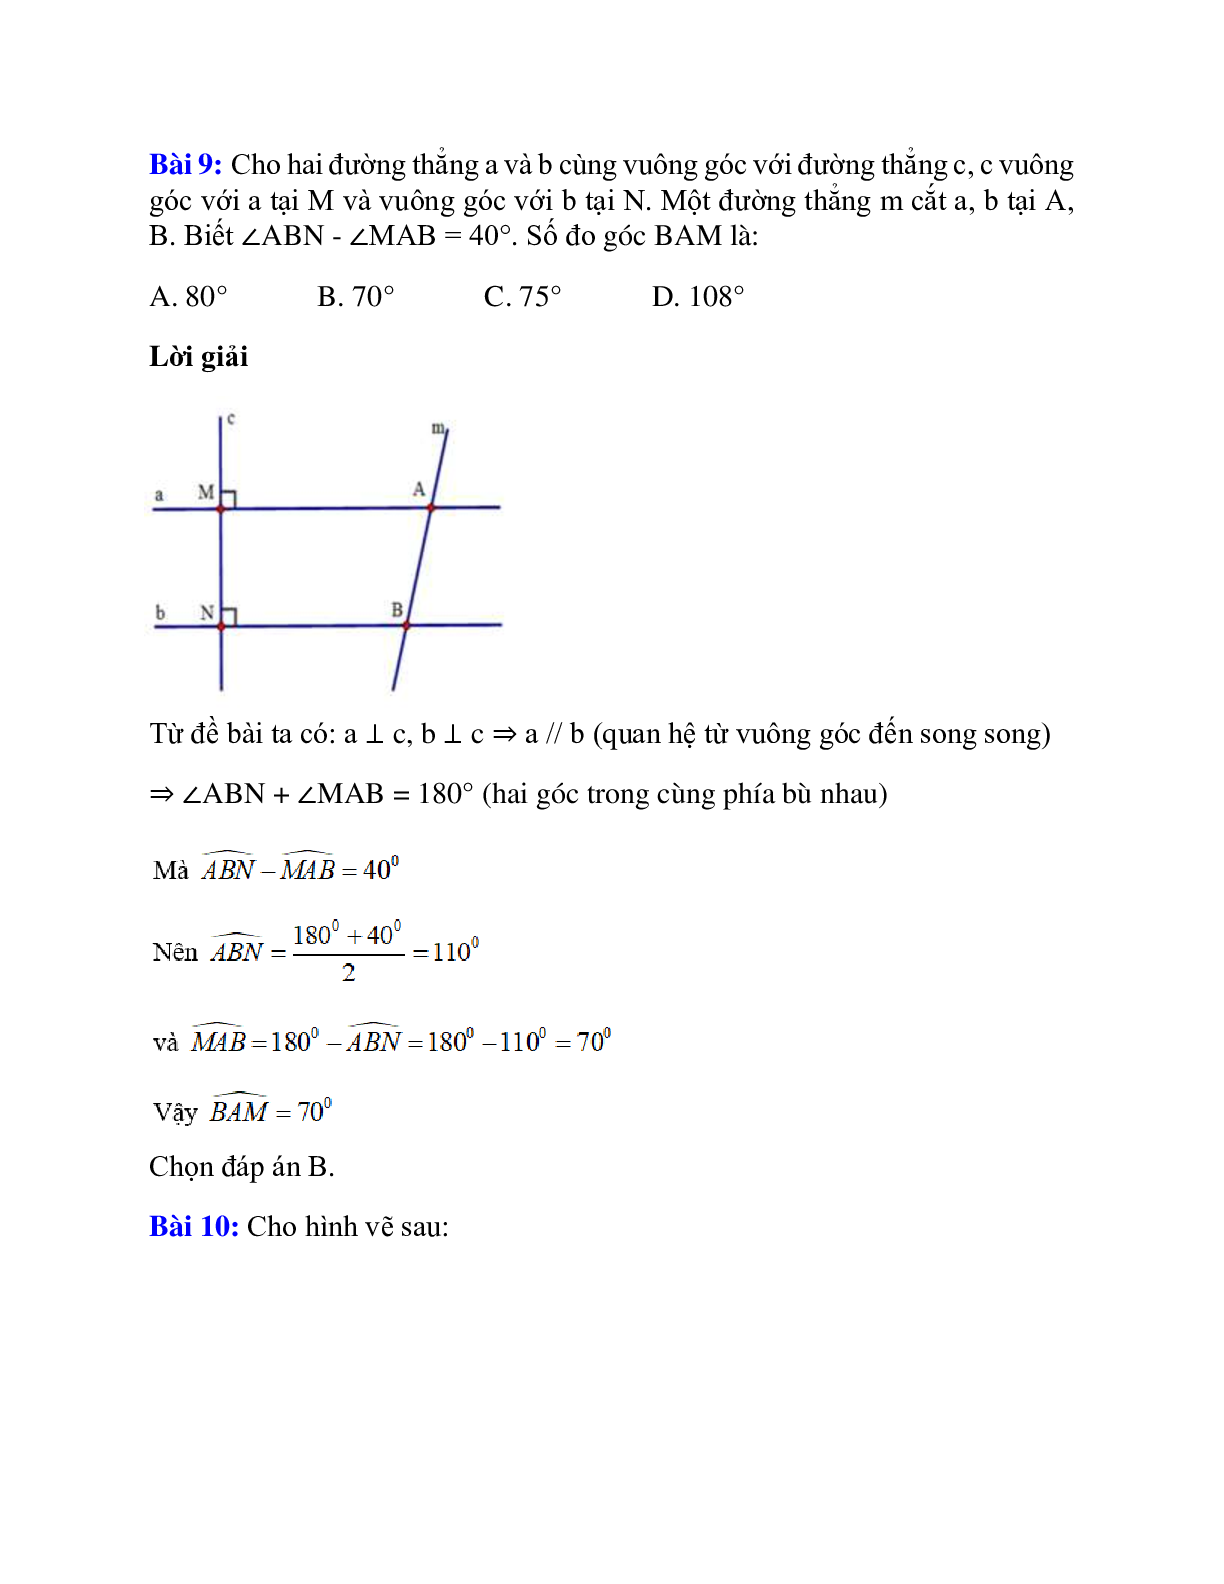 Trắc nghiệm Từ vuông góc đến song song có đáp án – Toán lớp 7 (trang 8)